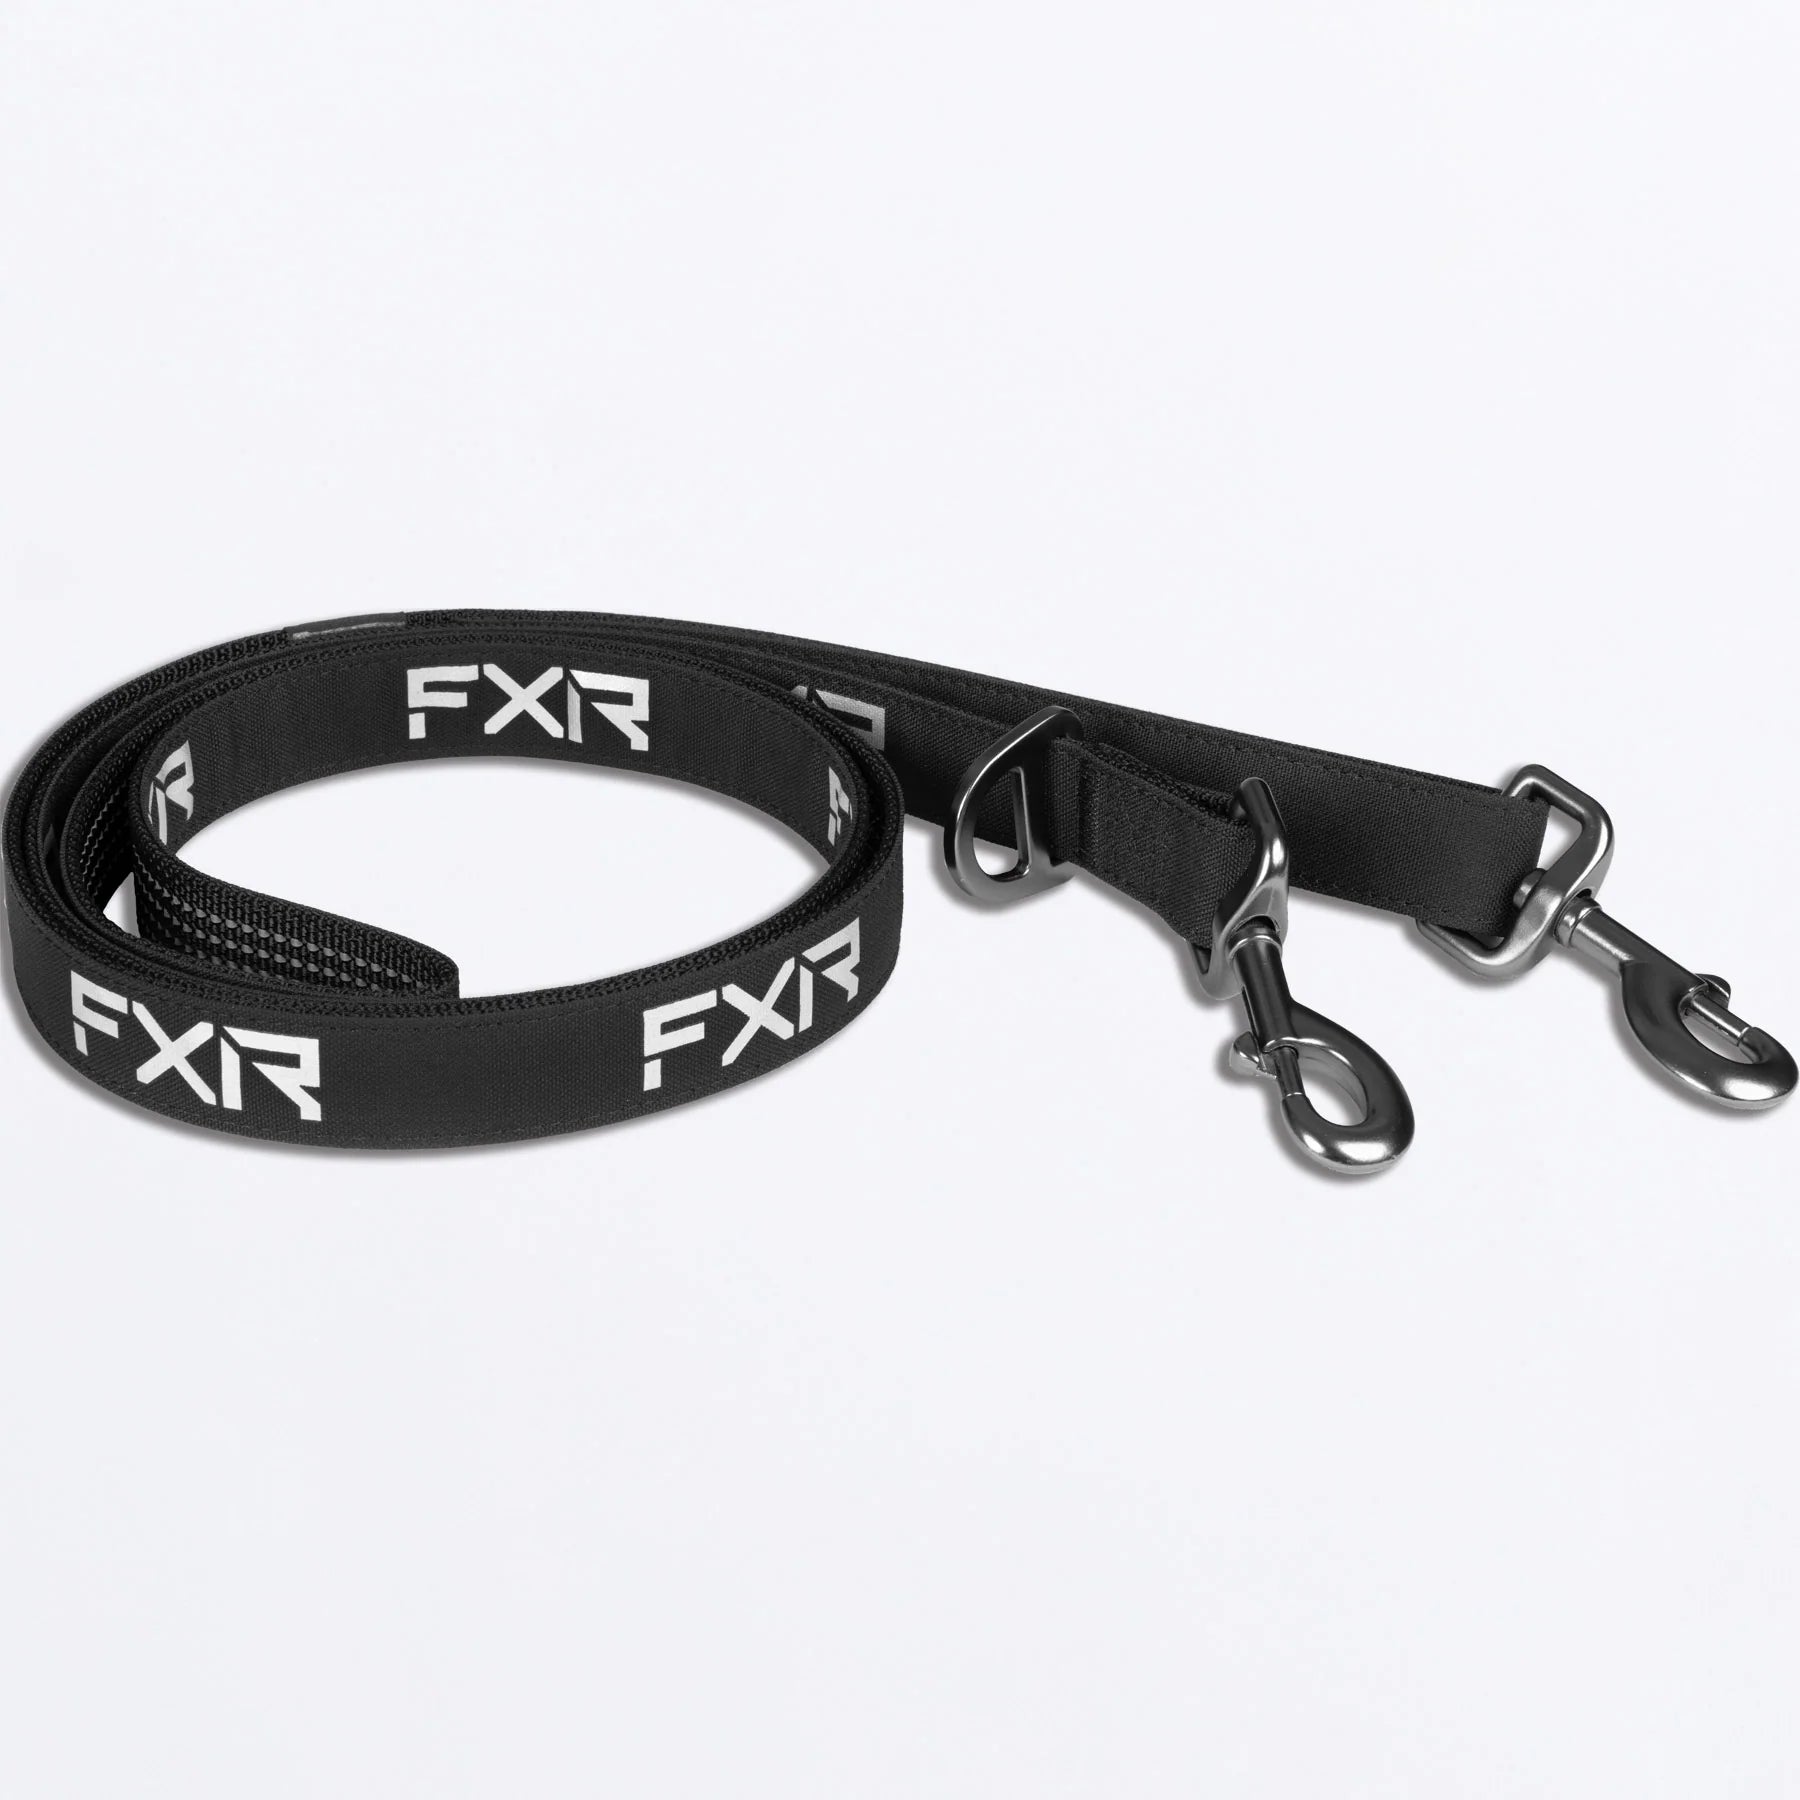 FXR Dog Leash Lead